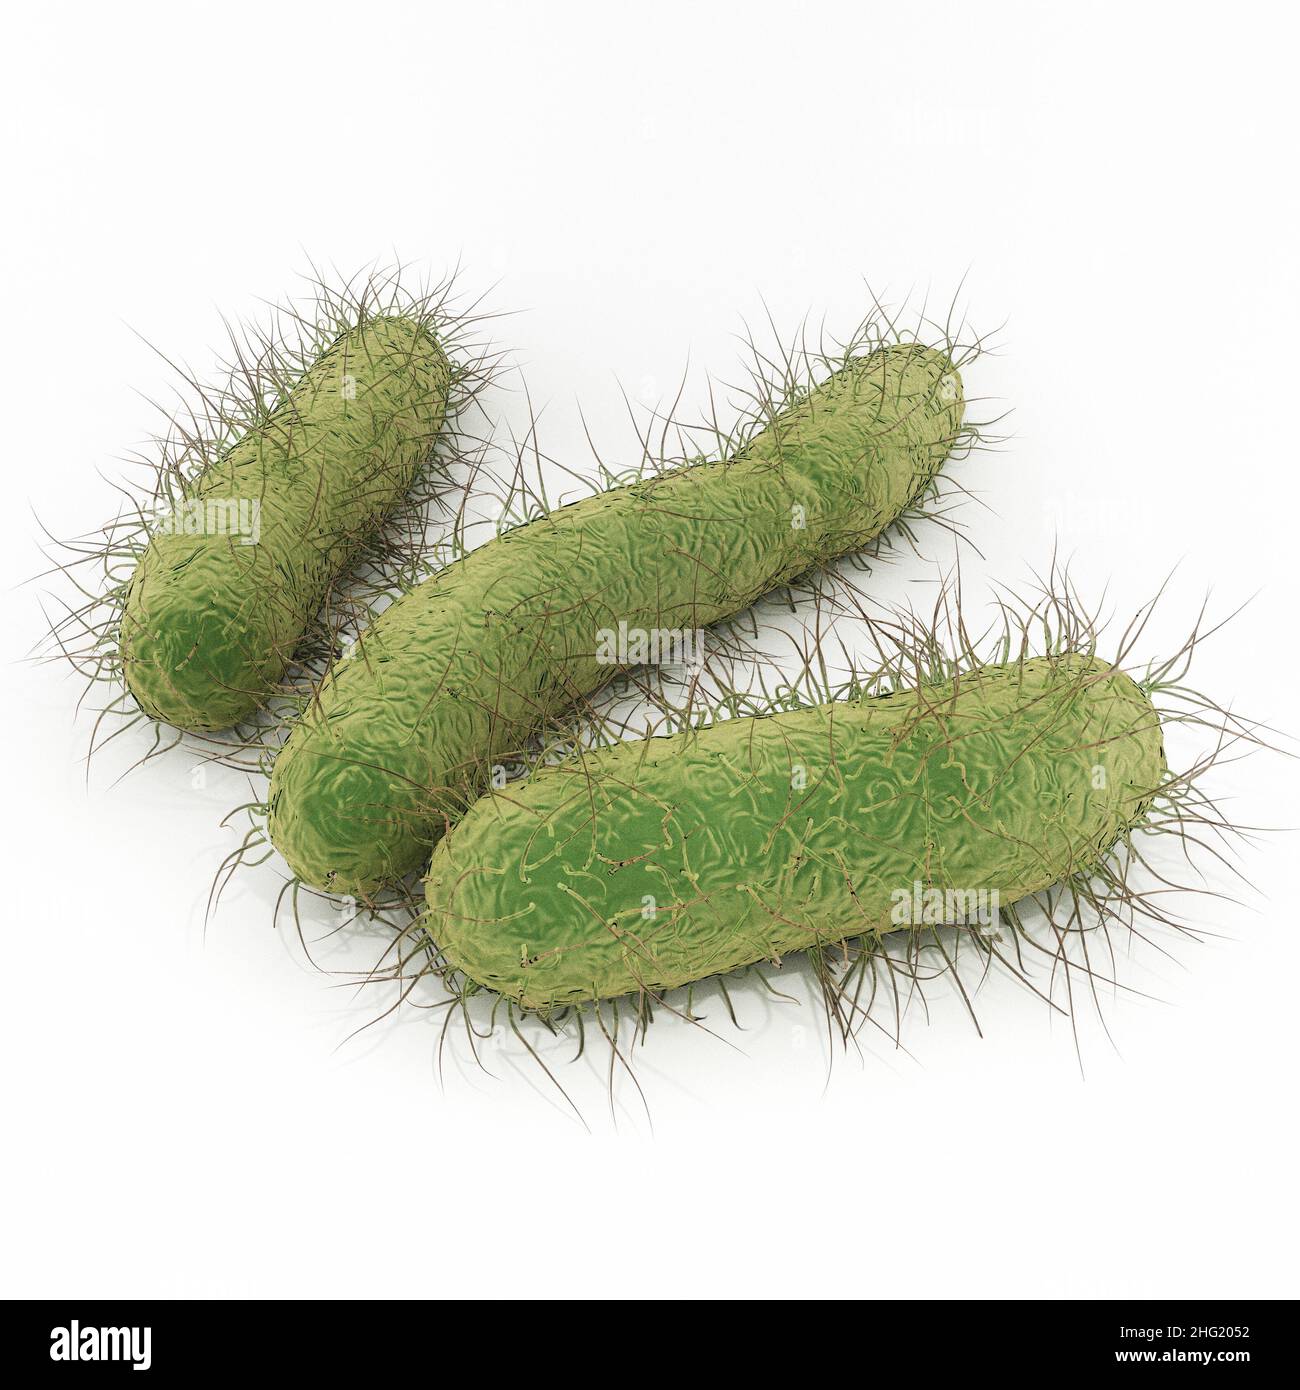 E. coli Bakterien - eine Illustration von Escherichia coli ist ein stabförmiges Bakterium der Gattung Escherichia, das schwere Lebensmittelvergiftungen verursachen kann. Stockfoto